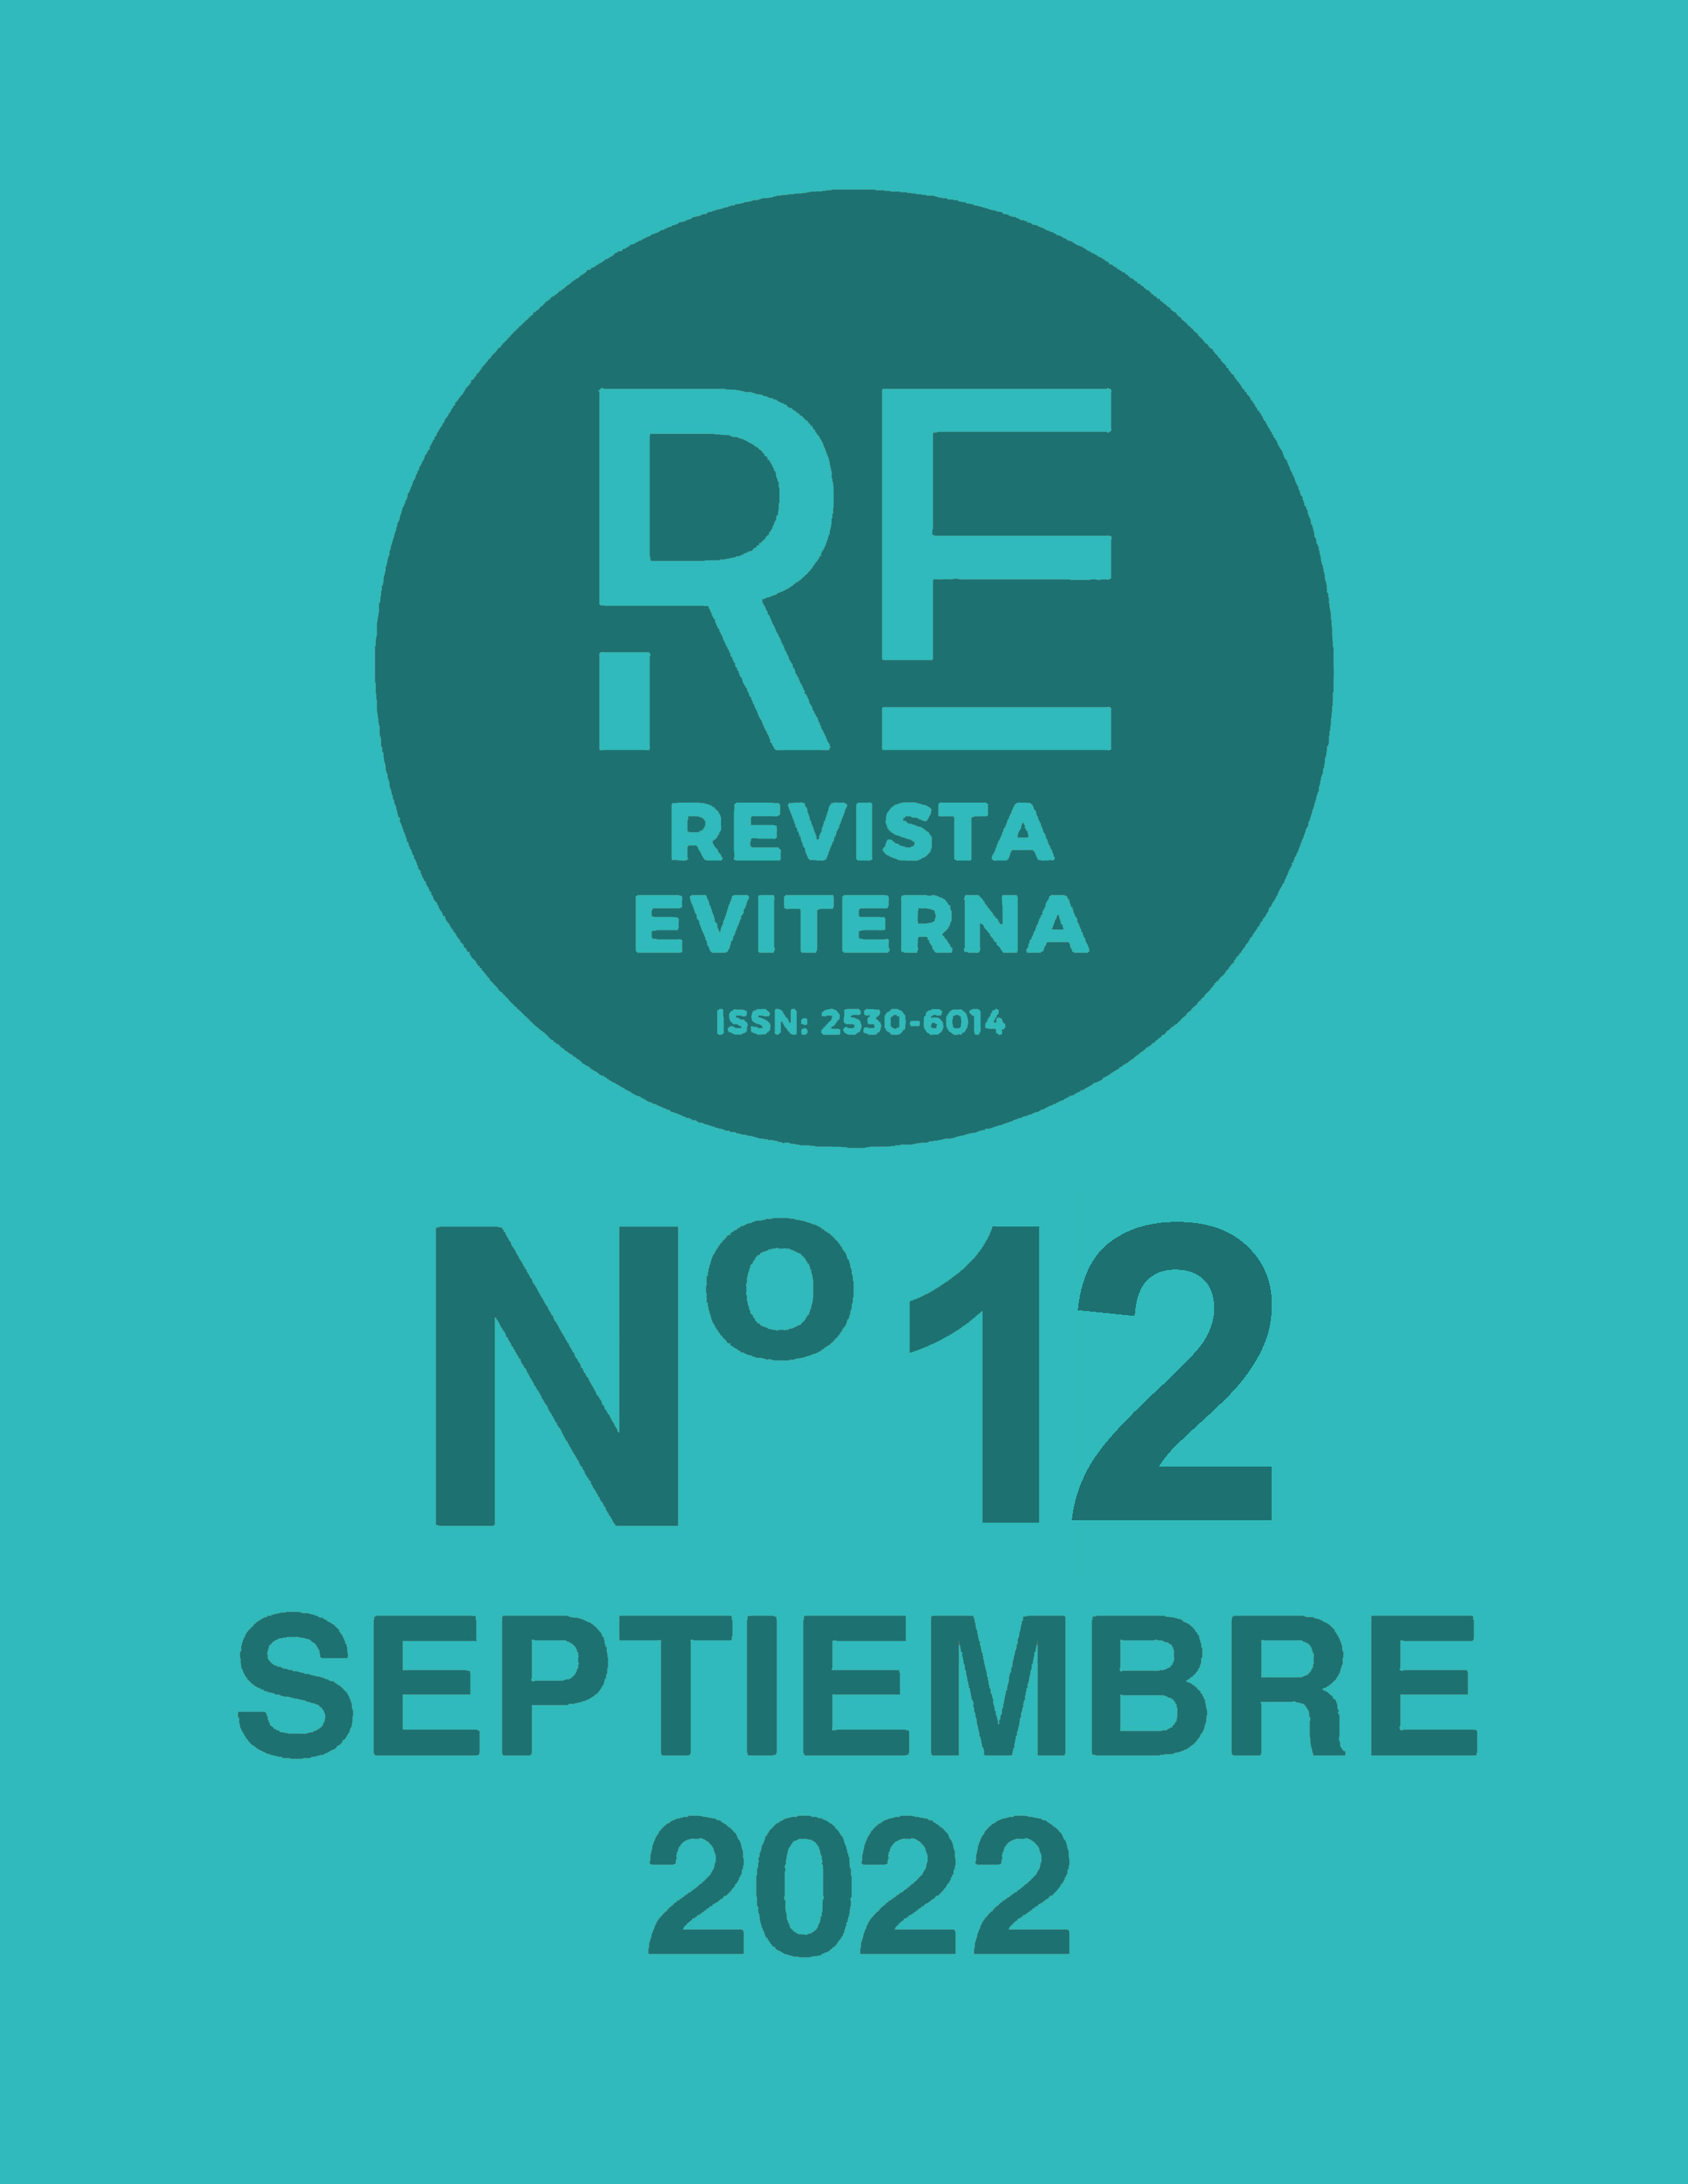 					View No. 12 (2022): Revista Eviterna Nº 12, september 2022
				